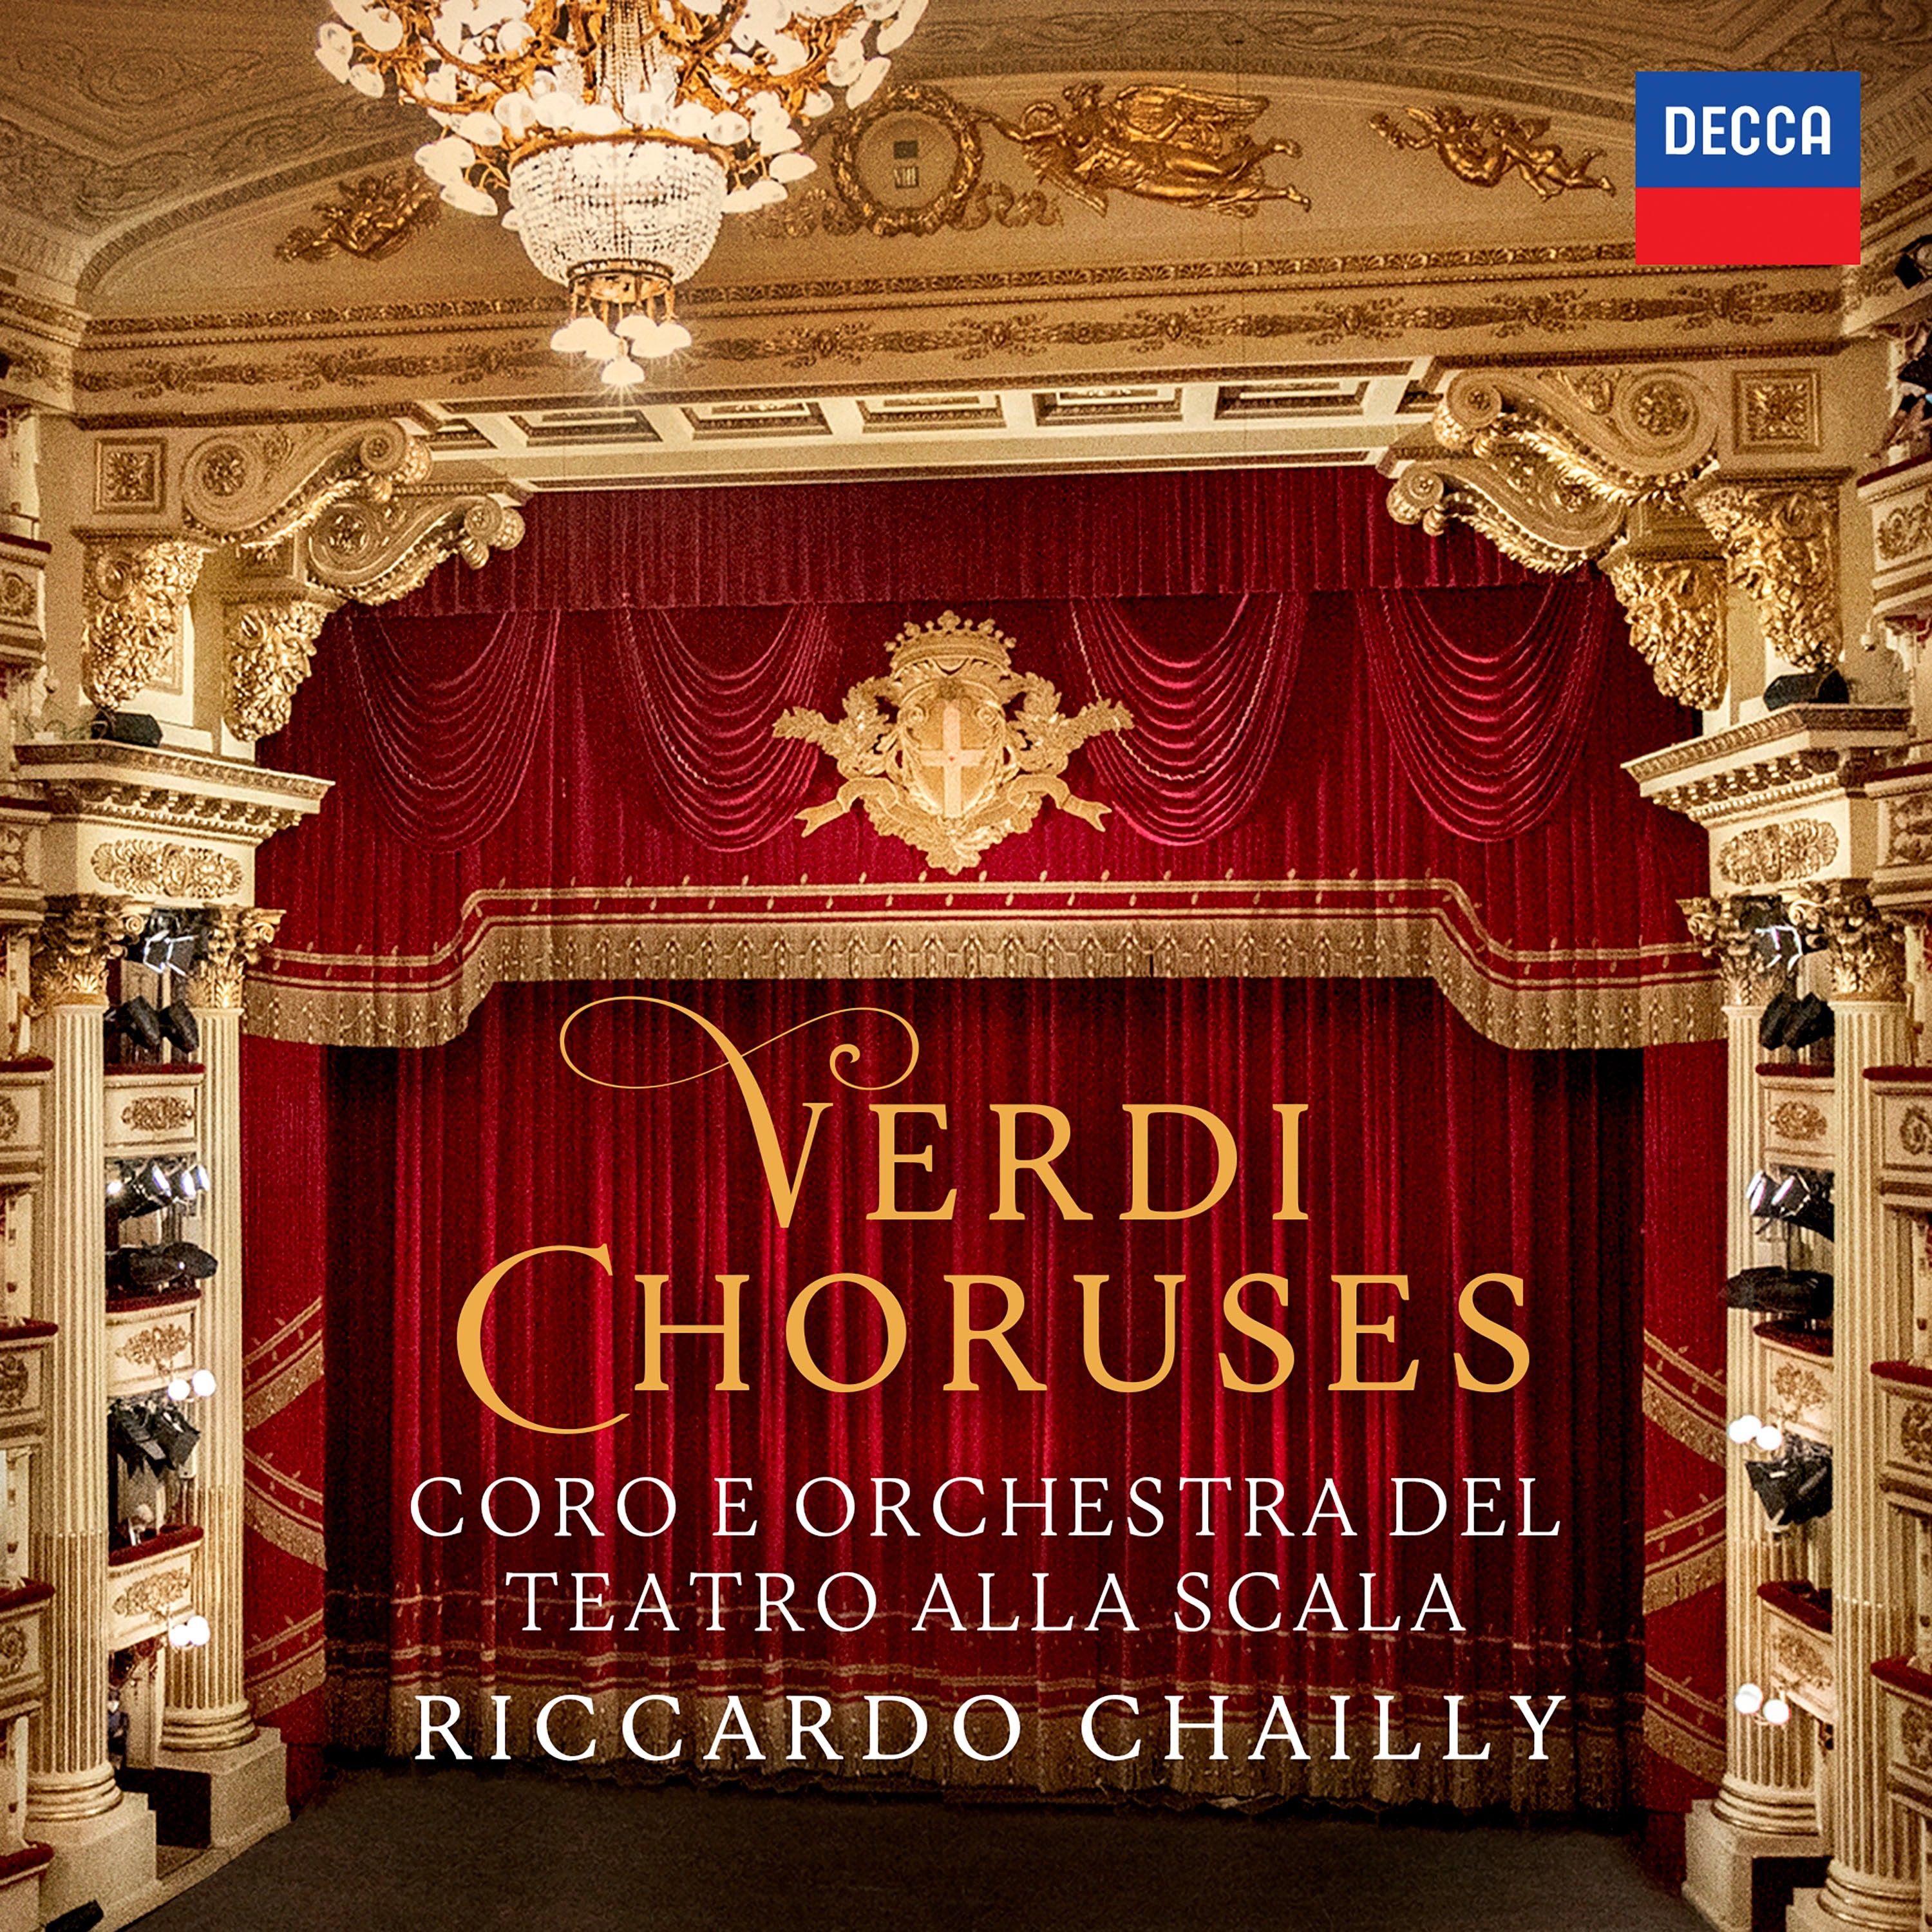 Coro del Teatro alla Scala di Milano, Orchestra del Teatro alla Scala di Milano, Riccardo Chailly - Verdi Choruses: CD